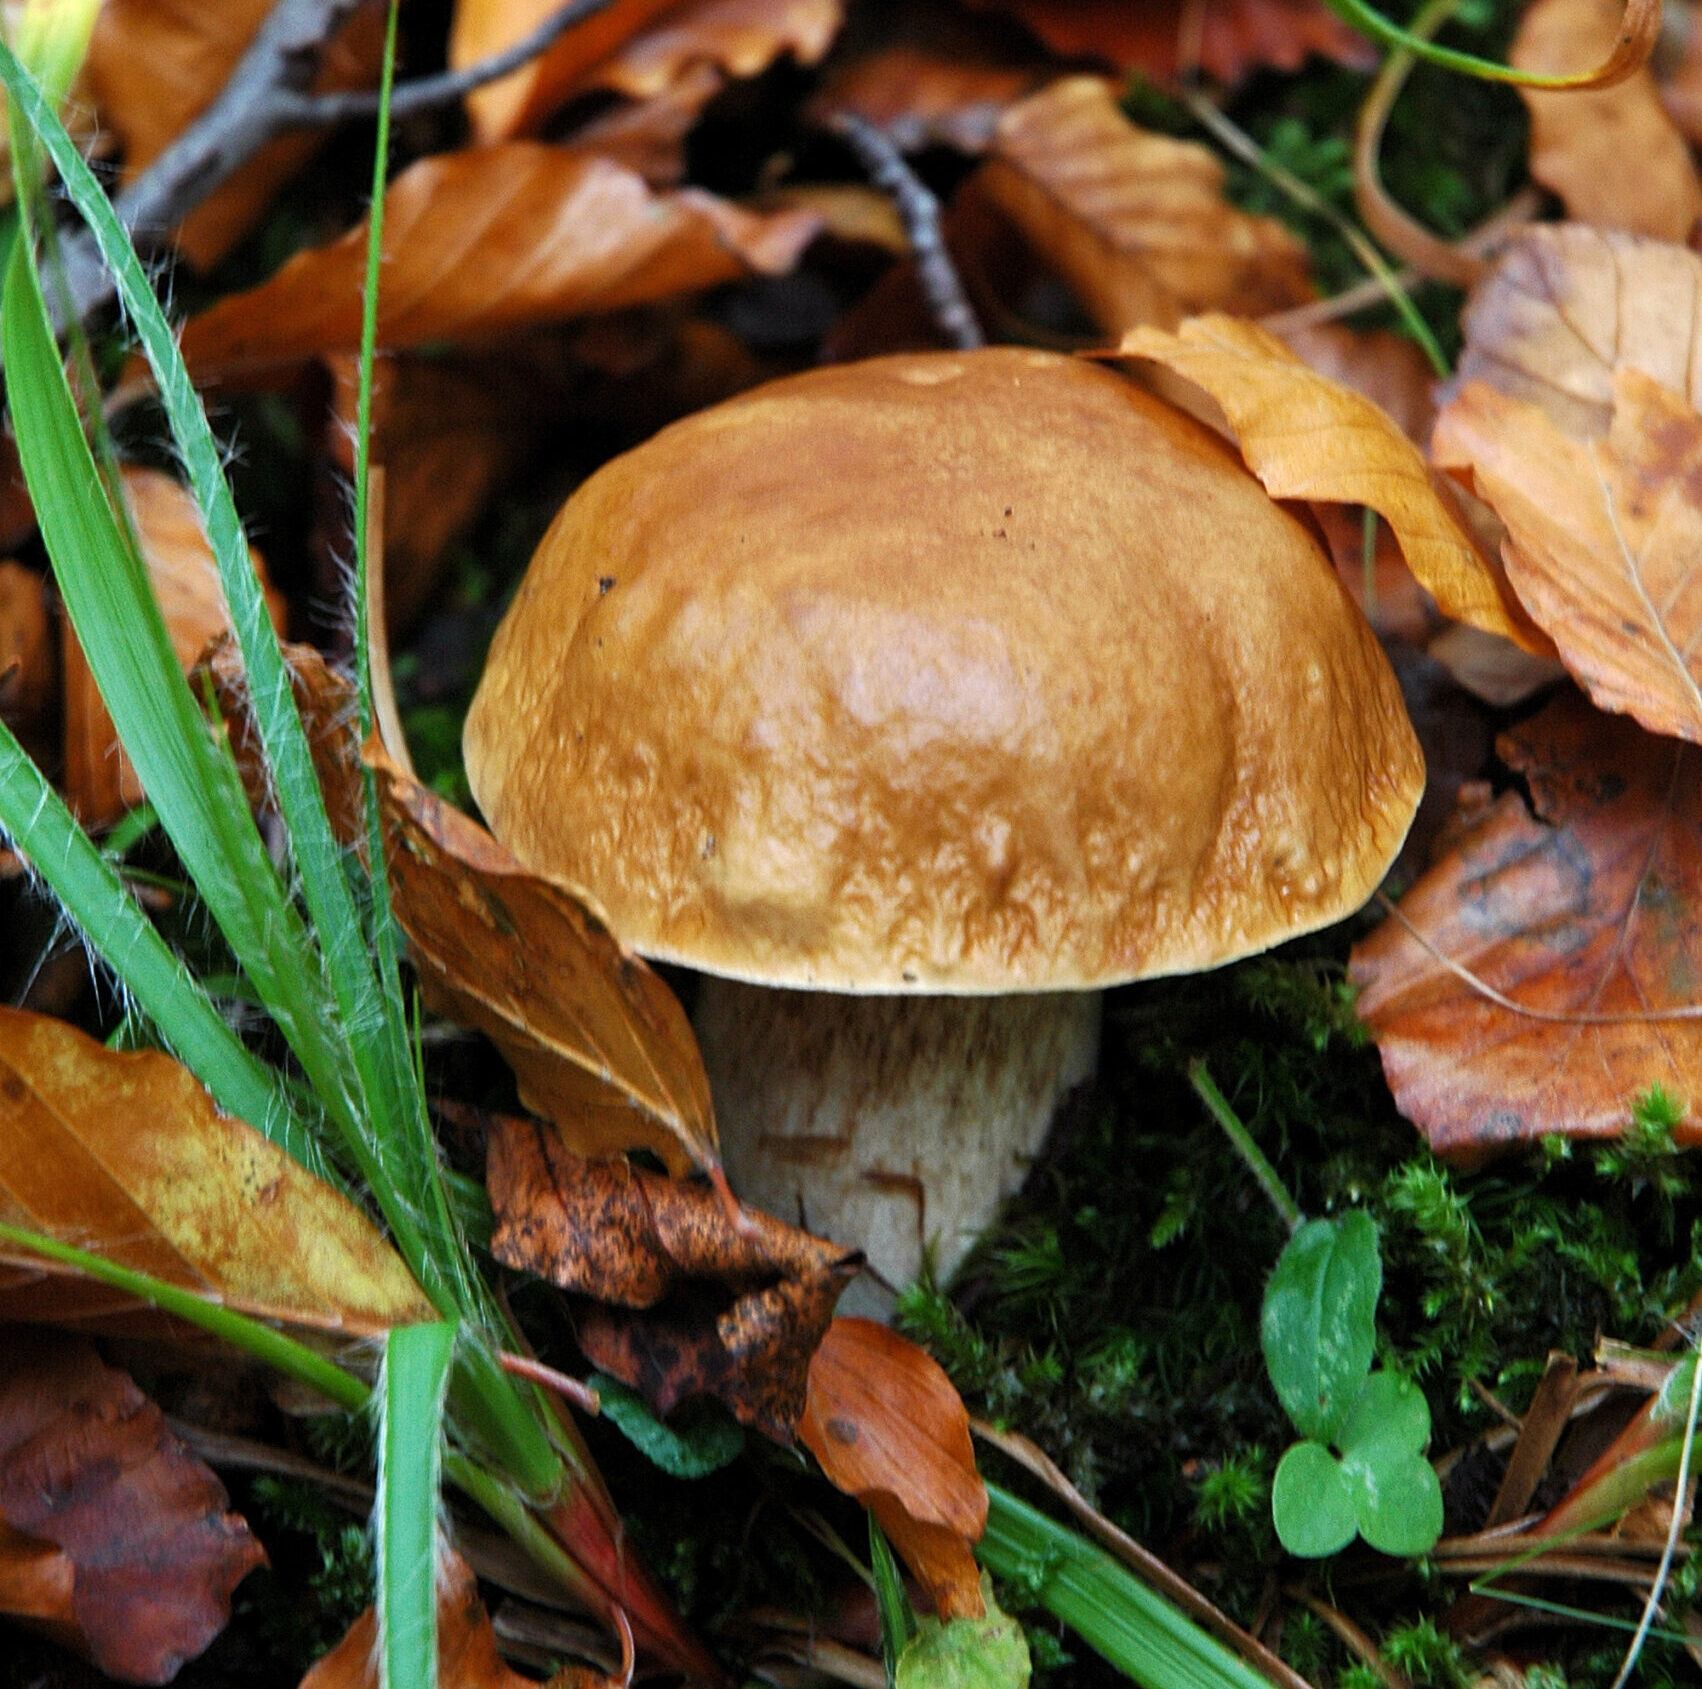 Autorizzazione raccolta funghi 2021 nel parco nazionale delle Foreste casentinesi: l’obbligo del PagoPA